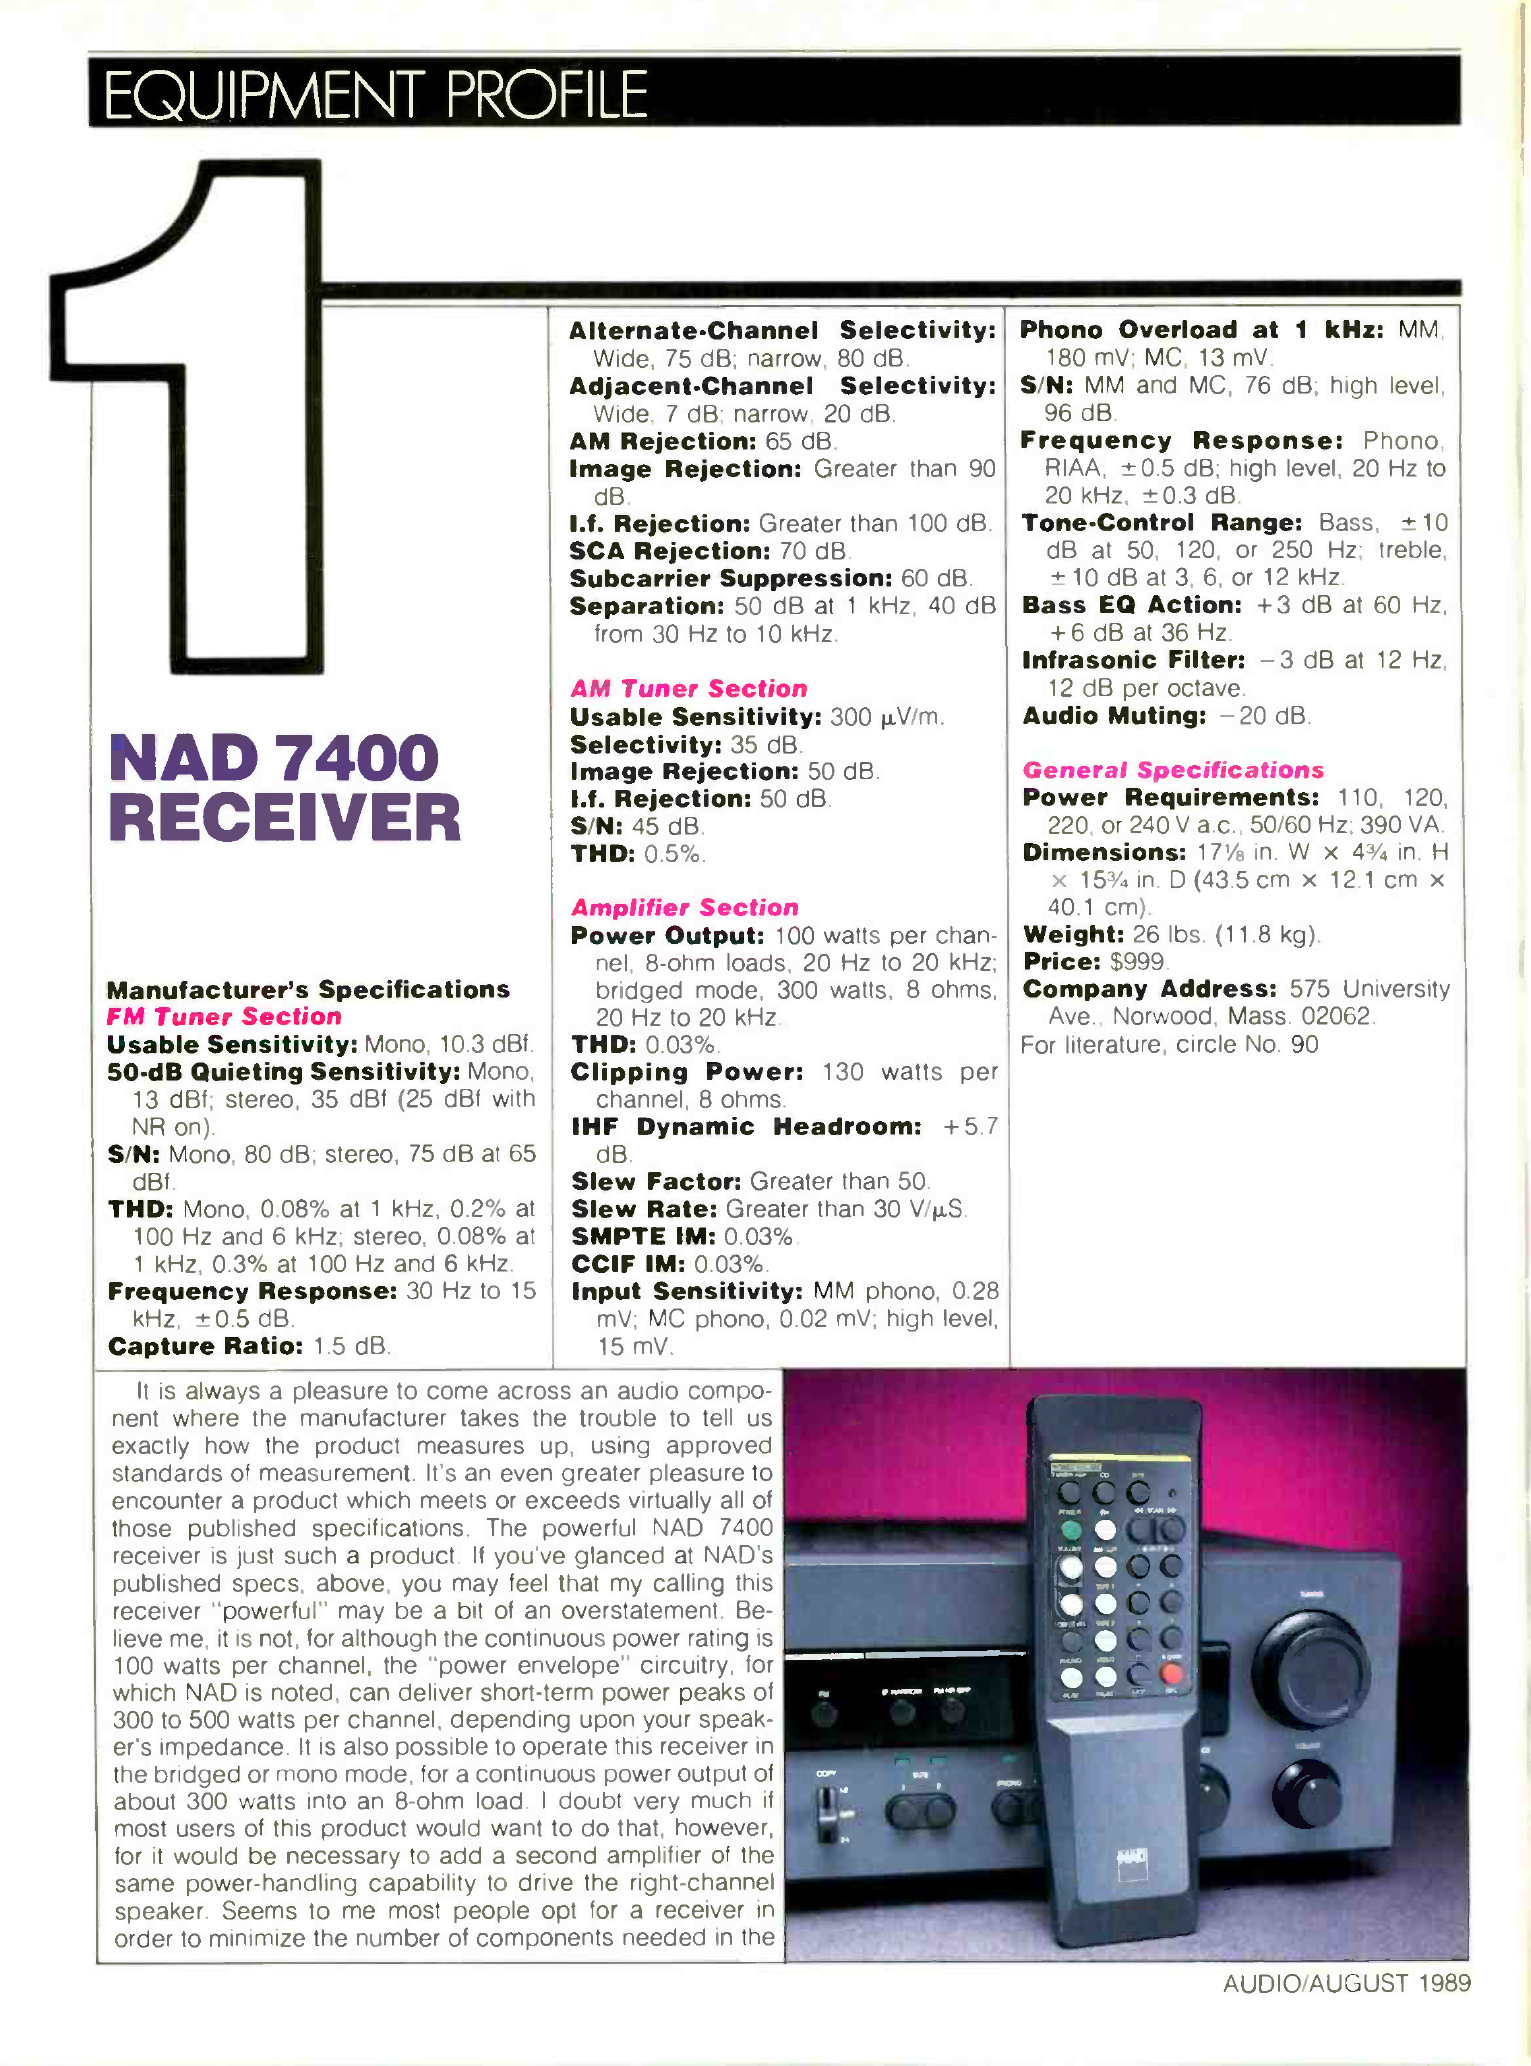 NAD Model 7400-Werbung-1989.jpg